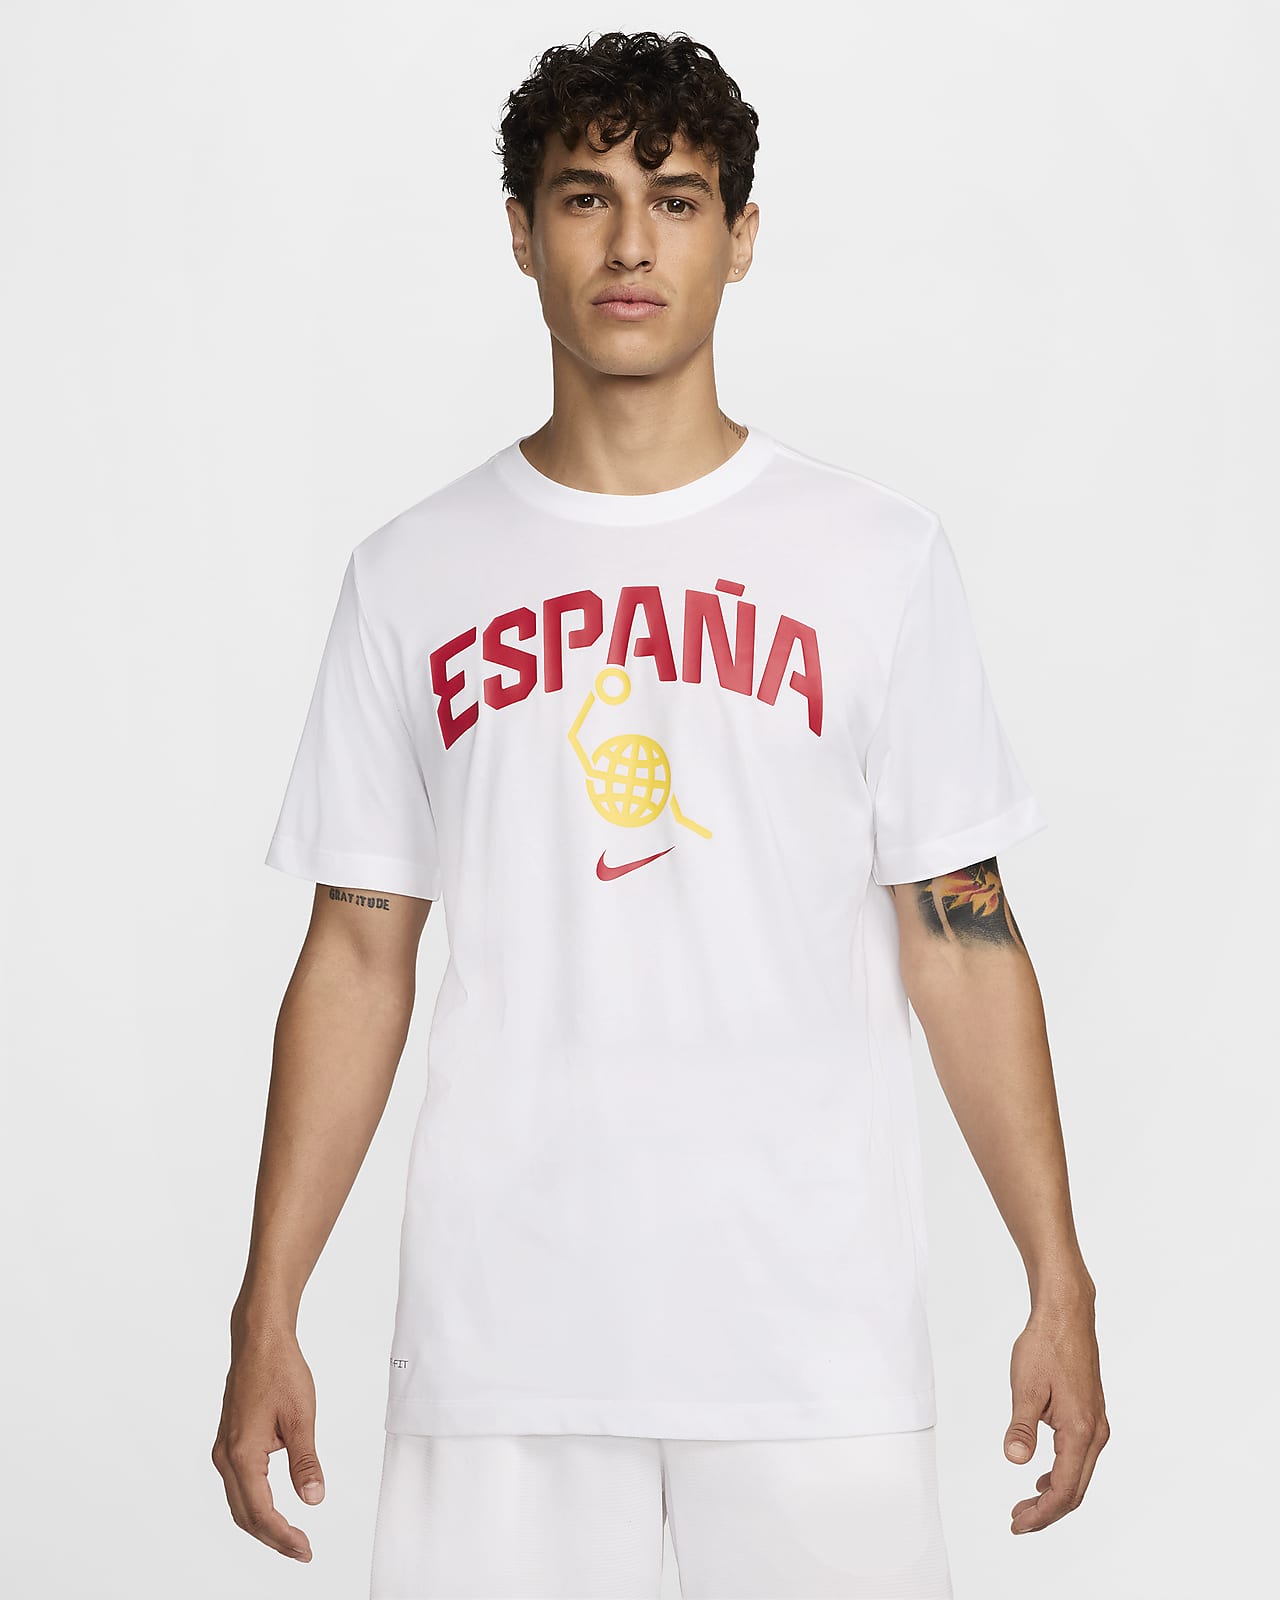 Spanien Nike Basketball-T-Shirt für Herren